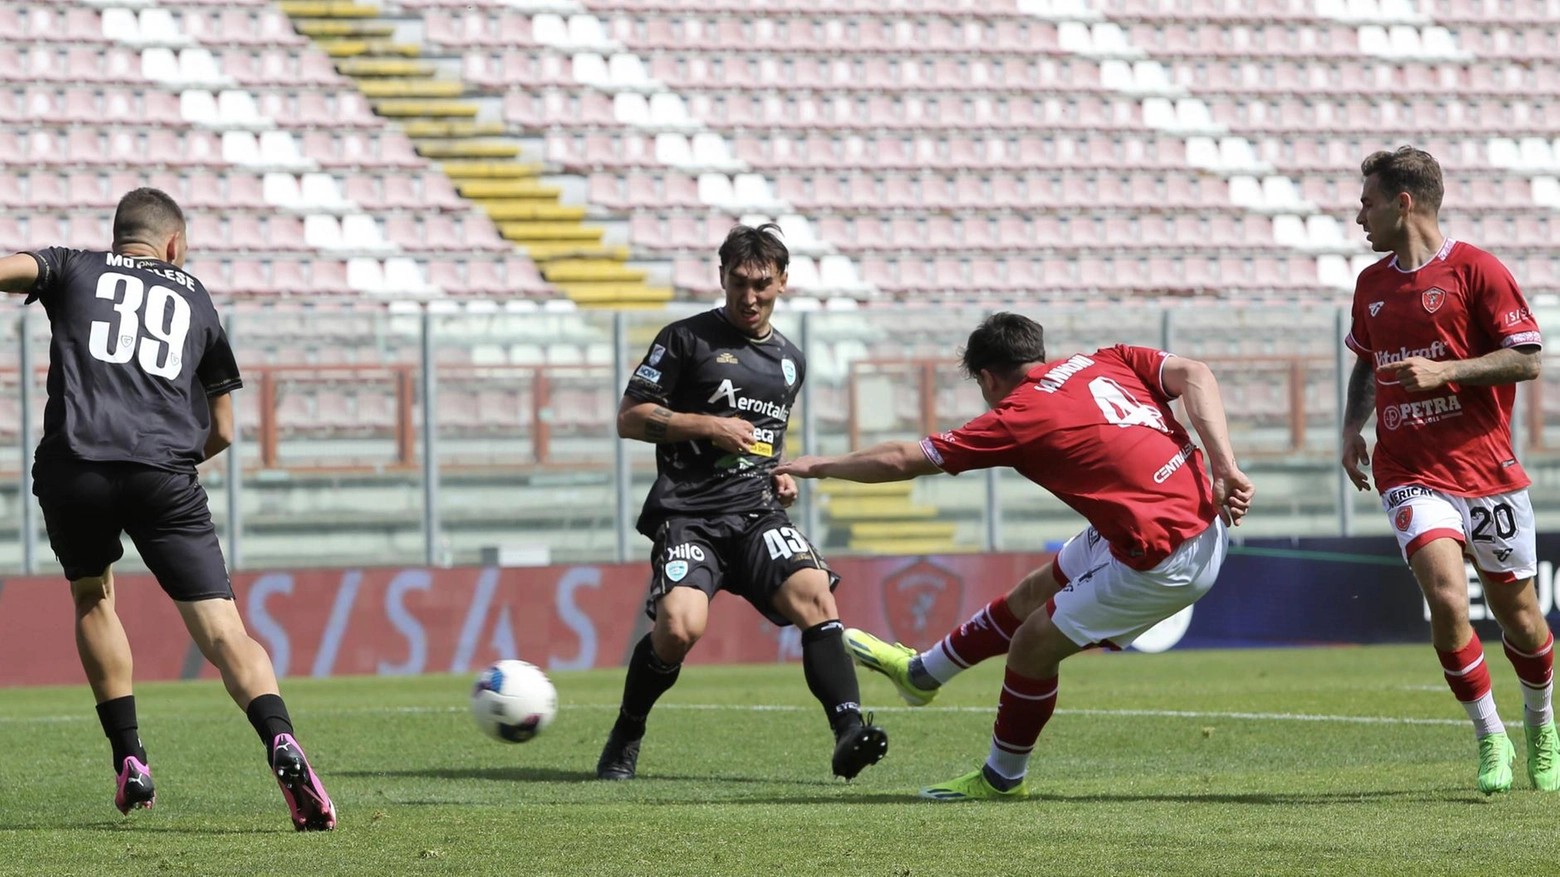 Il Perugia si prepara al calciomercato estivo, con l'obiettivo di alleggerire i debiti e rafforzare la rosa. I giocatori Iannoni e Seghetti sono ambiti da club di serie B, mentre la squadra cerca di snellire l'organico per fare spazio a nuovi arrivi. Priorità per il portiere.